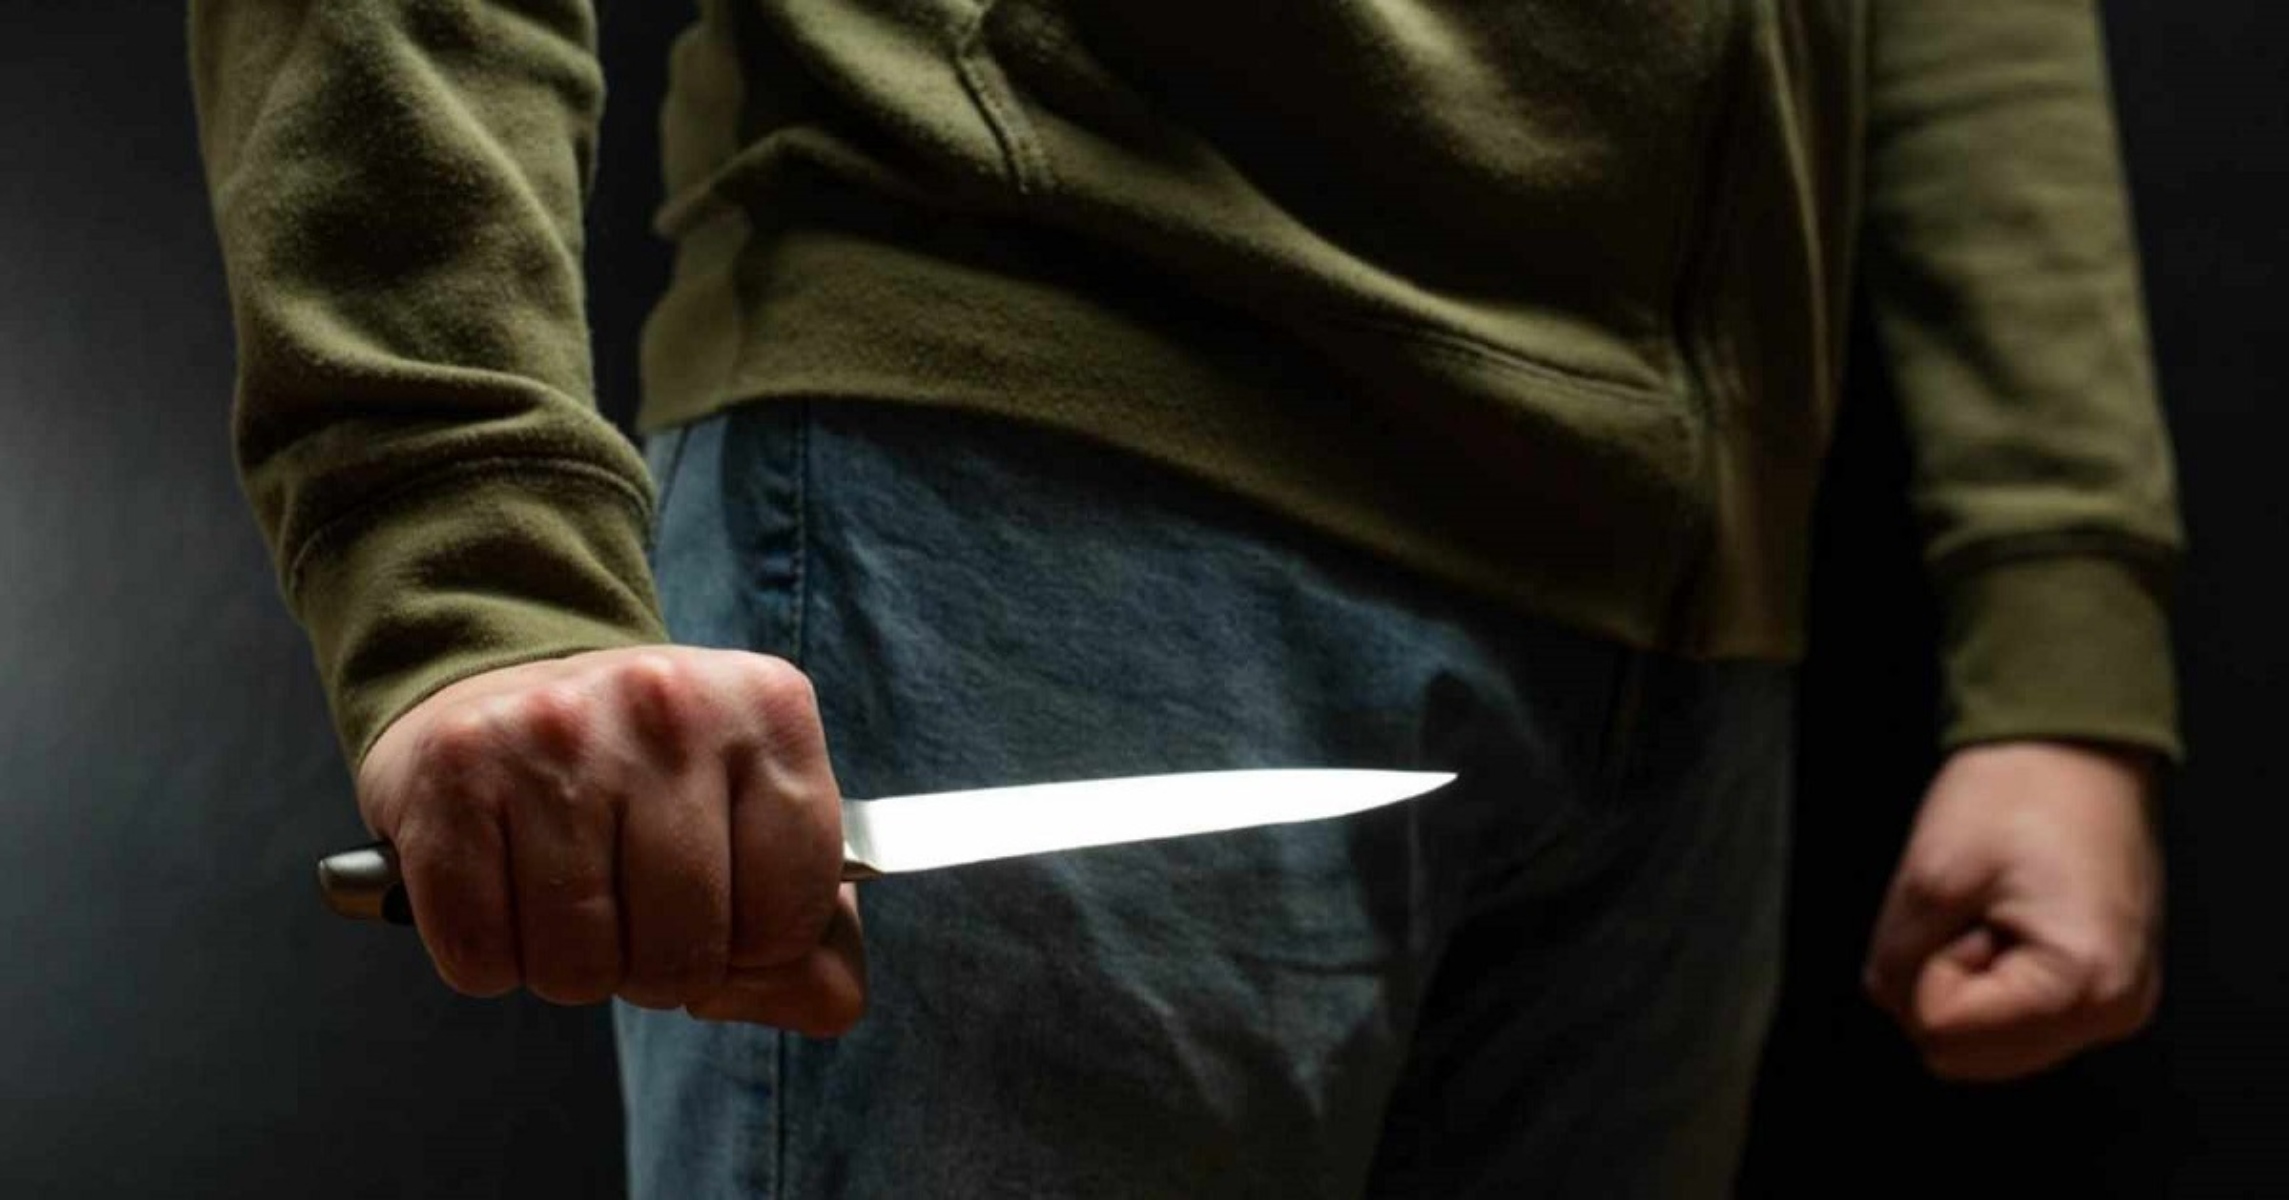 Ηράκλειο: Τρόμος για 17χρονο στον σταθμό του ΗΣΑΠ – Του επιτέθηκαν με μαχαίρι και τον τραυμάτισαν